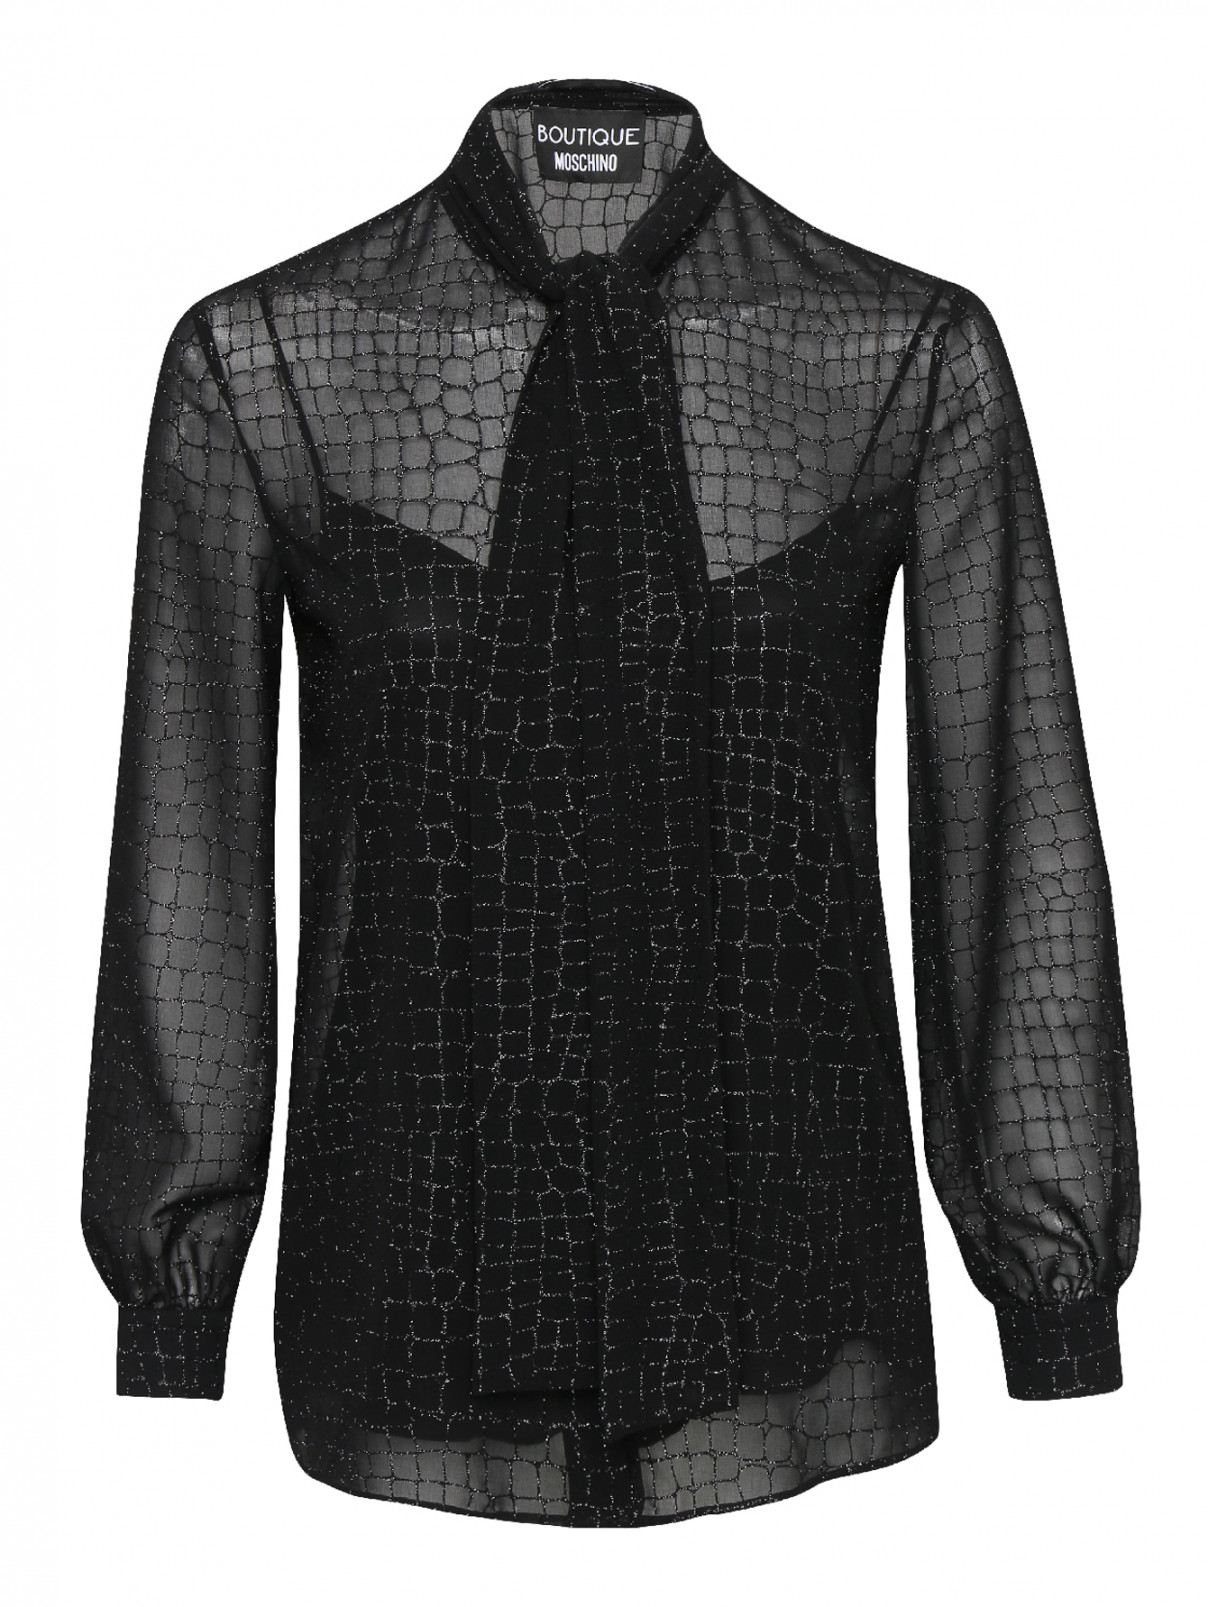 Блуза с бантом и узором Moschino Boutique  –  Общий вид  – Цвет:  Черный